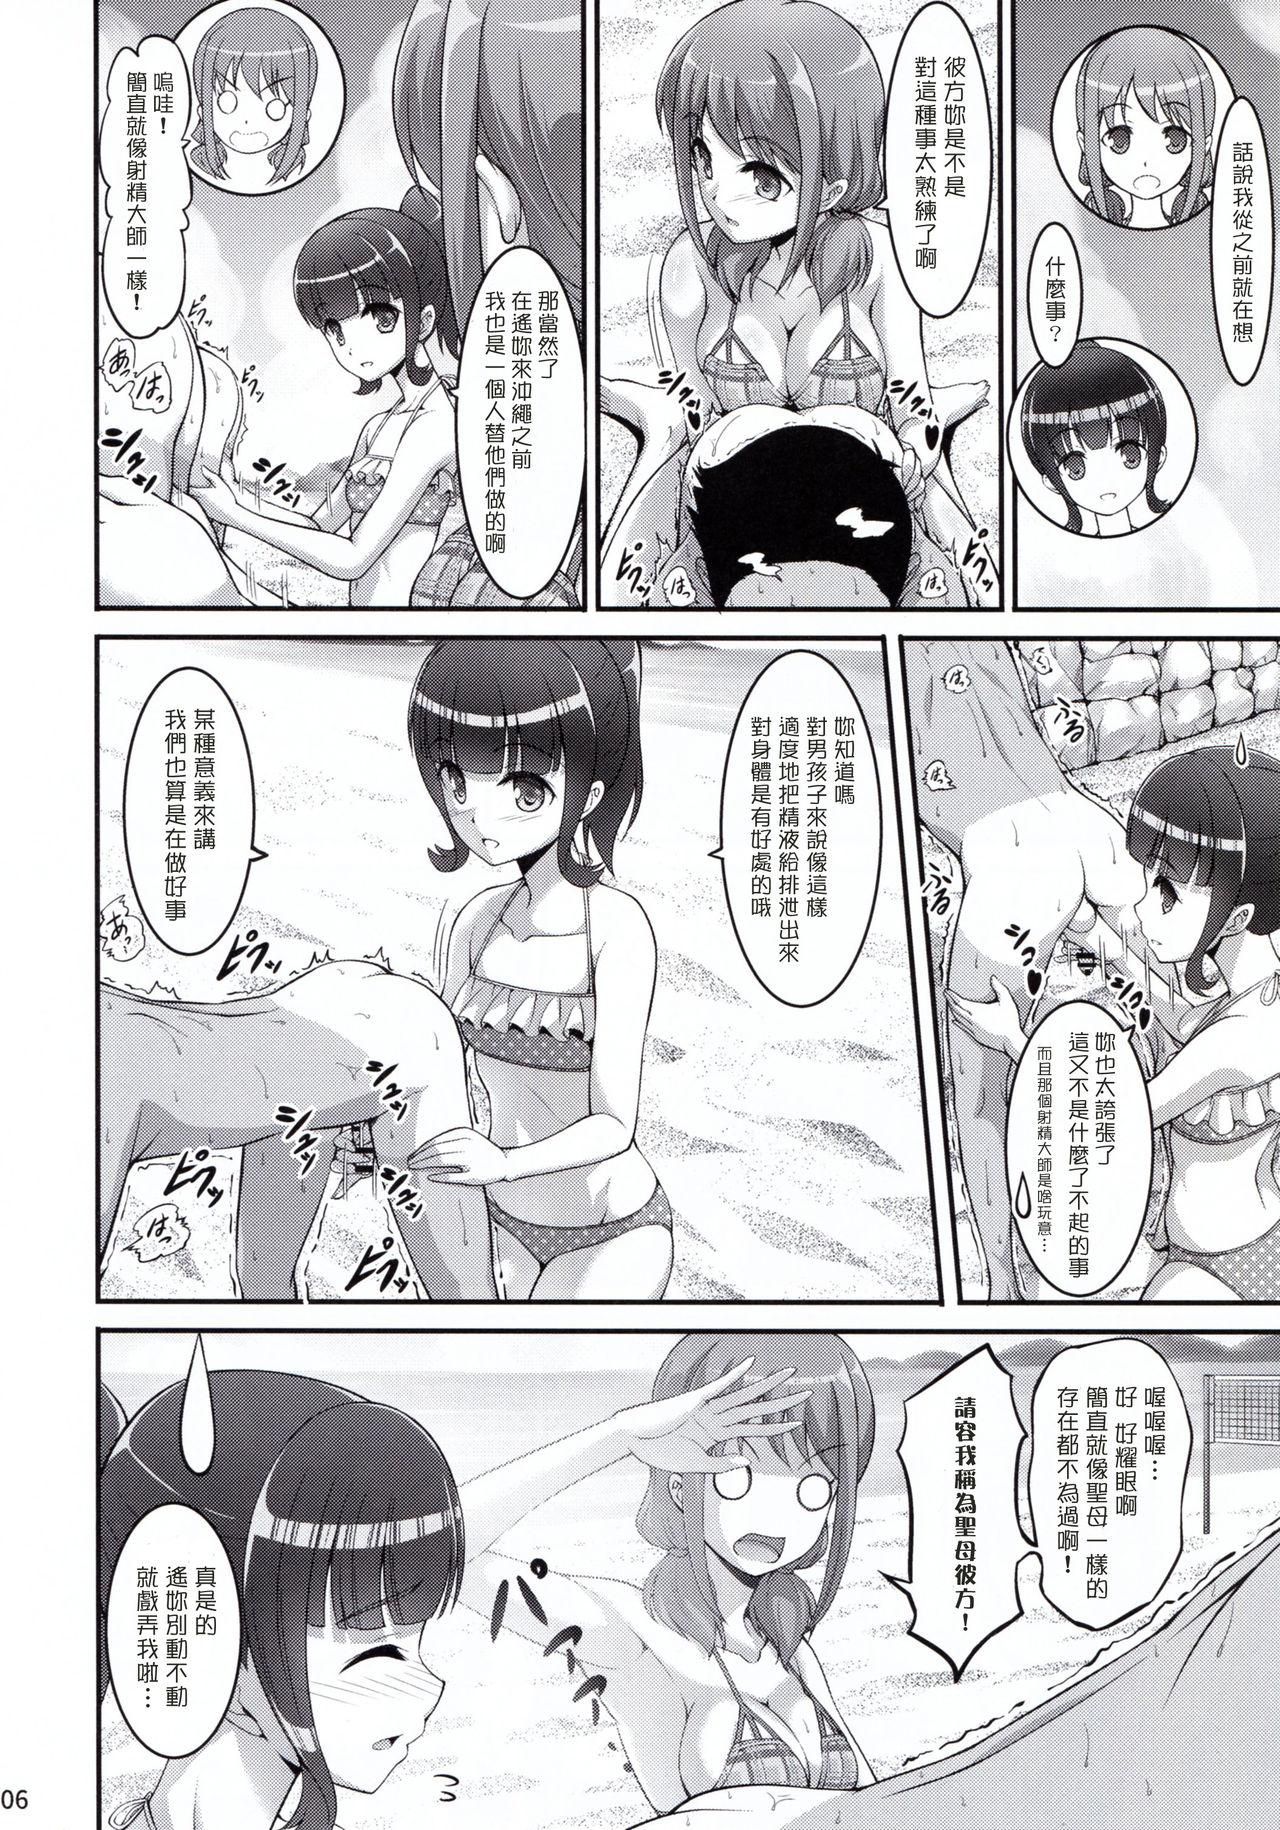 Shower Harukana Ecstasy - Harukana receive Groupfuck - Page 6